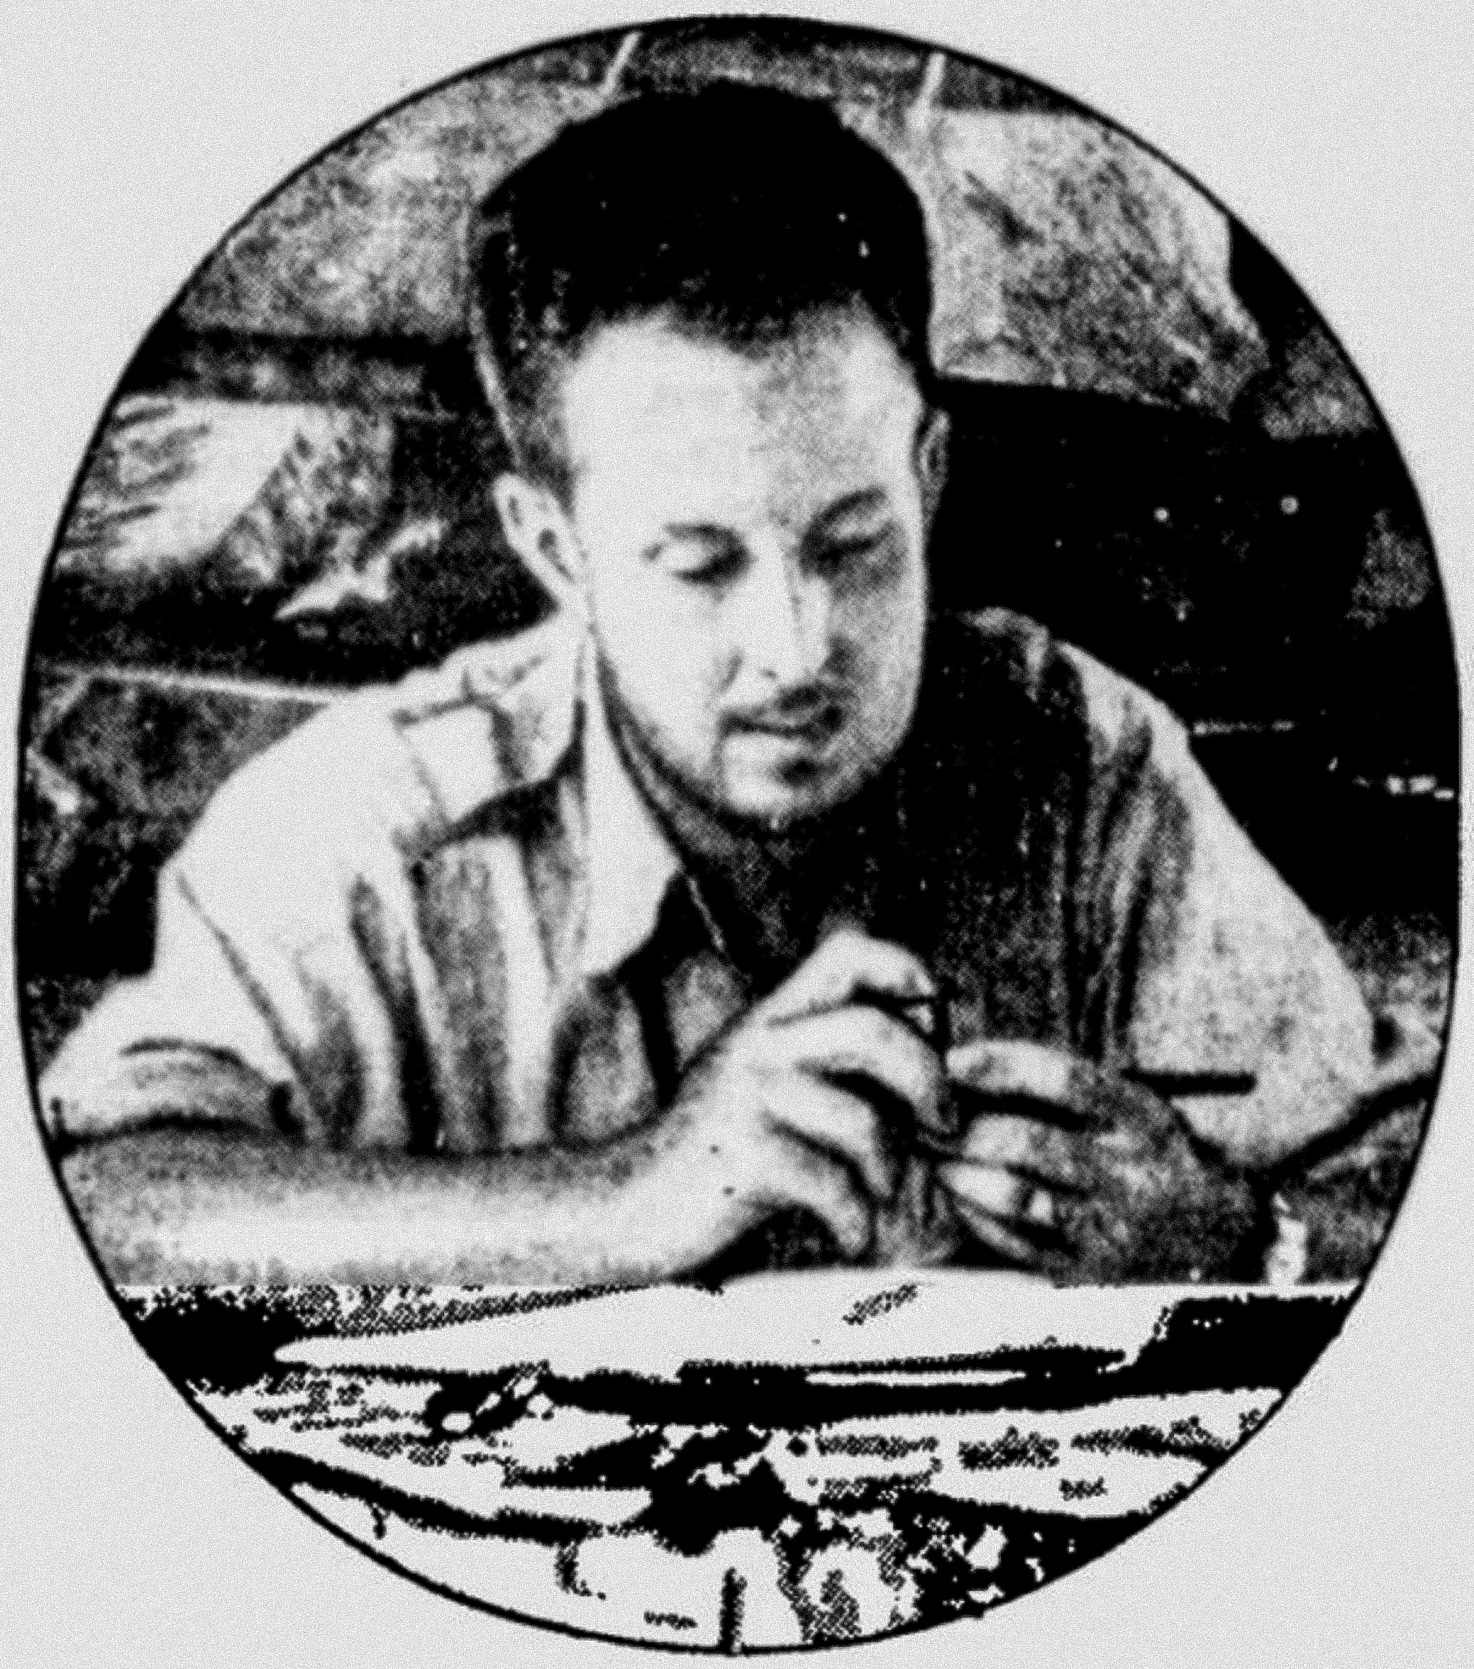 अमेरिकी अन्वेषक थियोडोर मोर्डे 1940 मा ला मोस्किटिया अन्वेषण गर्दा होन्डुरनको वर्षावनमा आफ्नो डेस्कमा बसिरहेका थिए।